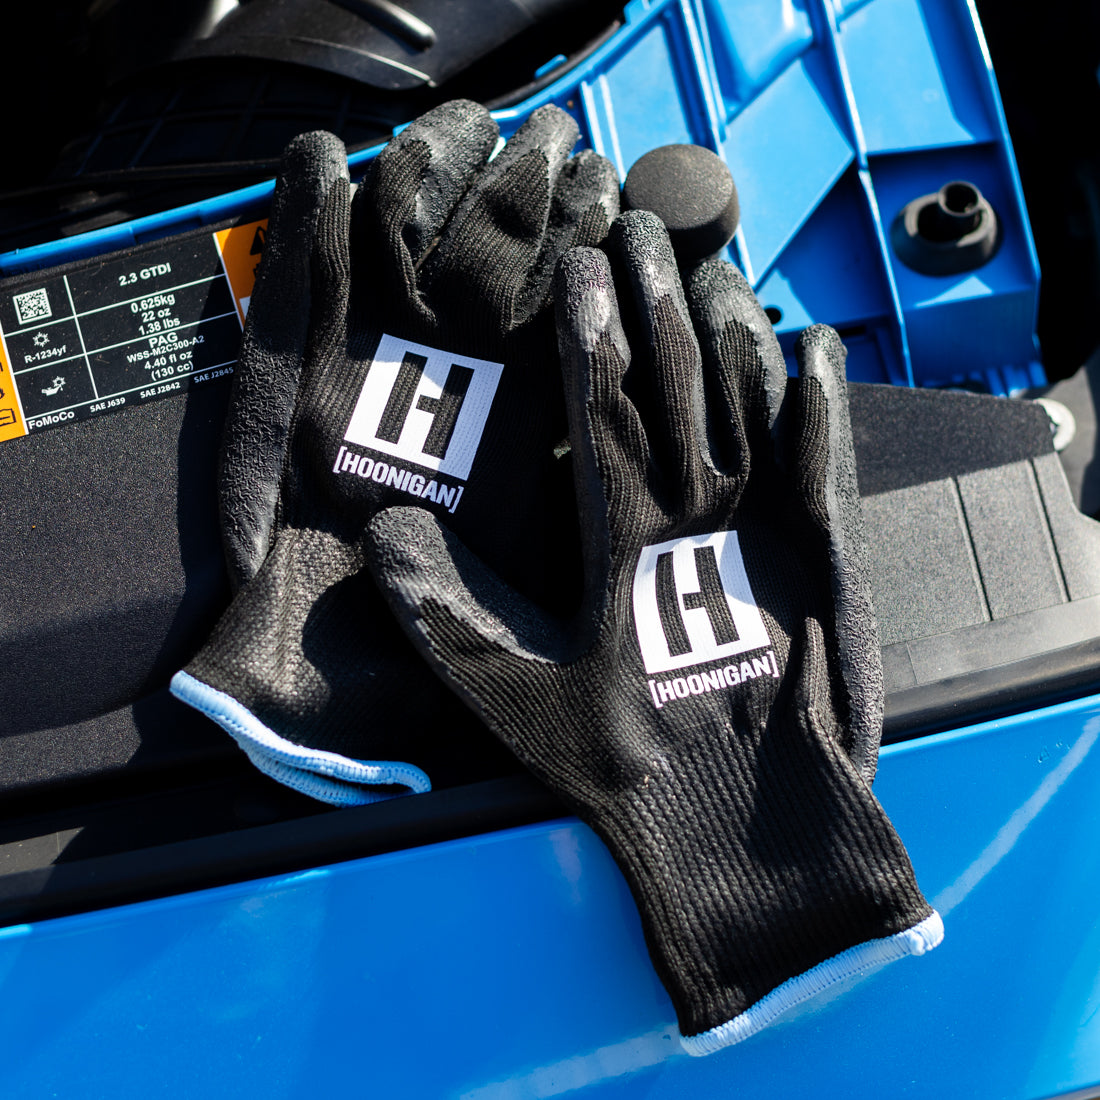 Hoonigan HBOX Work Gloves